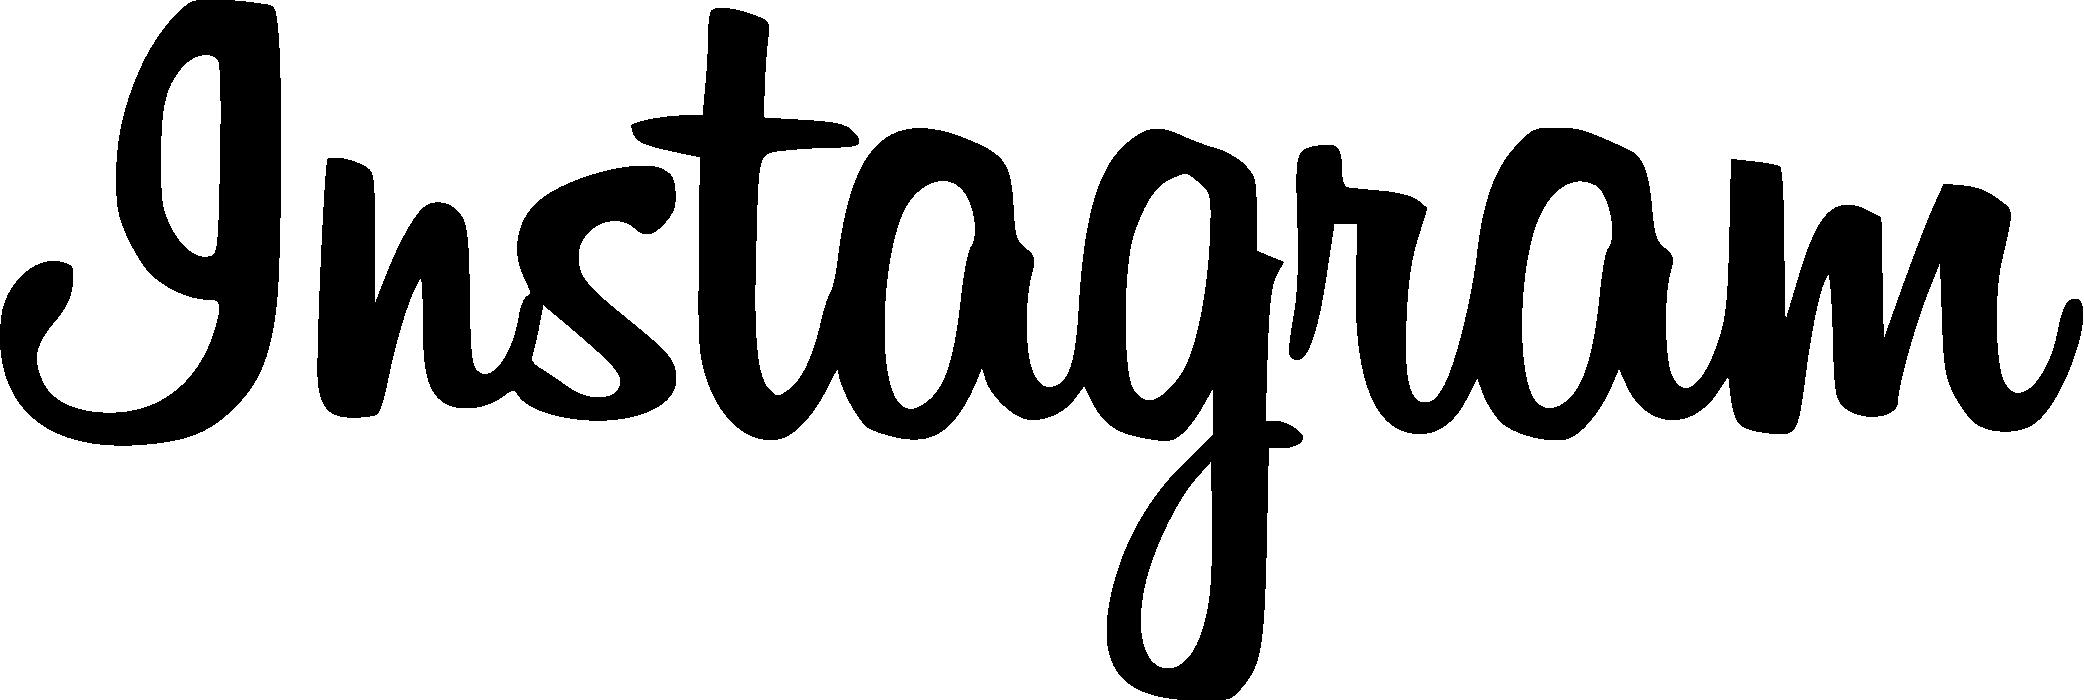 Kiểu chữ Instagram đặc biệt đã trở thành một biểu tượng của tính đồng nhất và nhận diện thương hiệu. Với nhiều phiên bản mới được cập nhật liên tục, kiểu chữ Instagram đang được sử dụng rộng rãi trên các ứng dụng và trang web khác nhau. Hãy khám phá kiểu chữ Instagram và biến giấc mơ của bạn thành hiện thực.